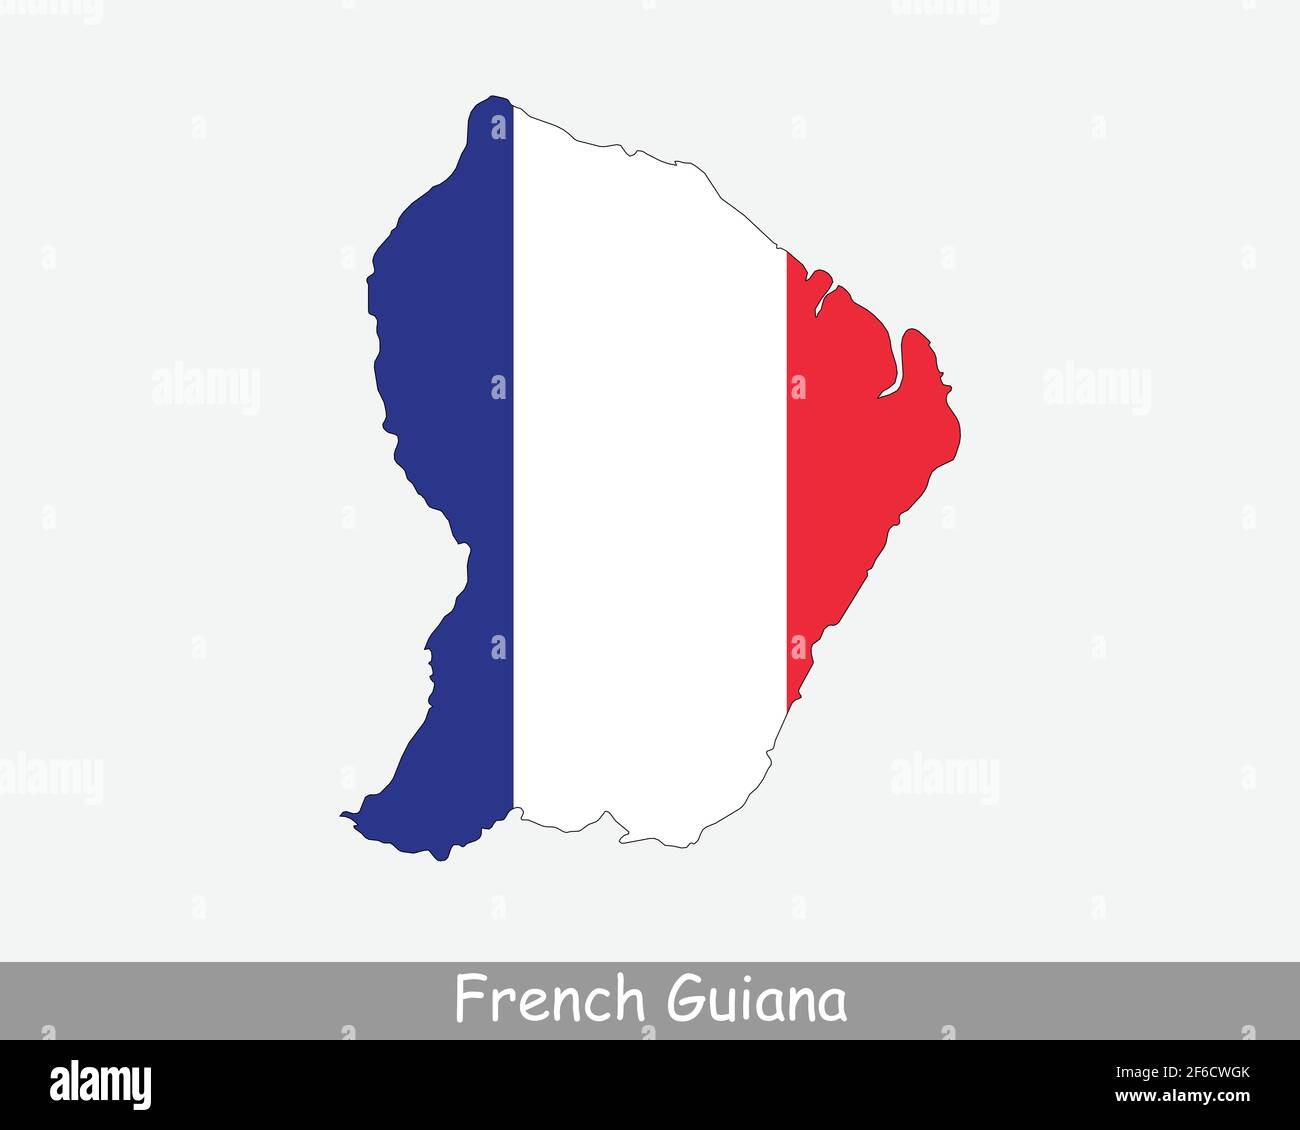 Französisch-Guayana Karte Flagge. Karte von Guyane mit französischer Flagge isoliert auf weißem Hintergrund. Überseeische Abteilung, Region und einzelne territoriale Kollektivität o Stock Vektor